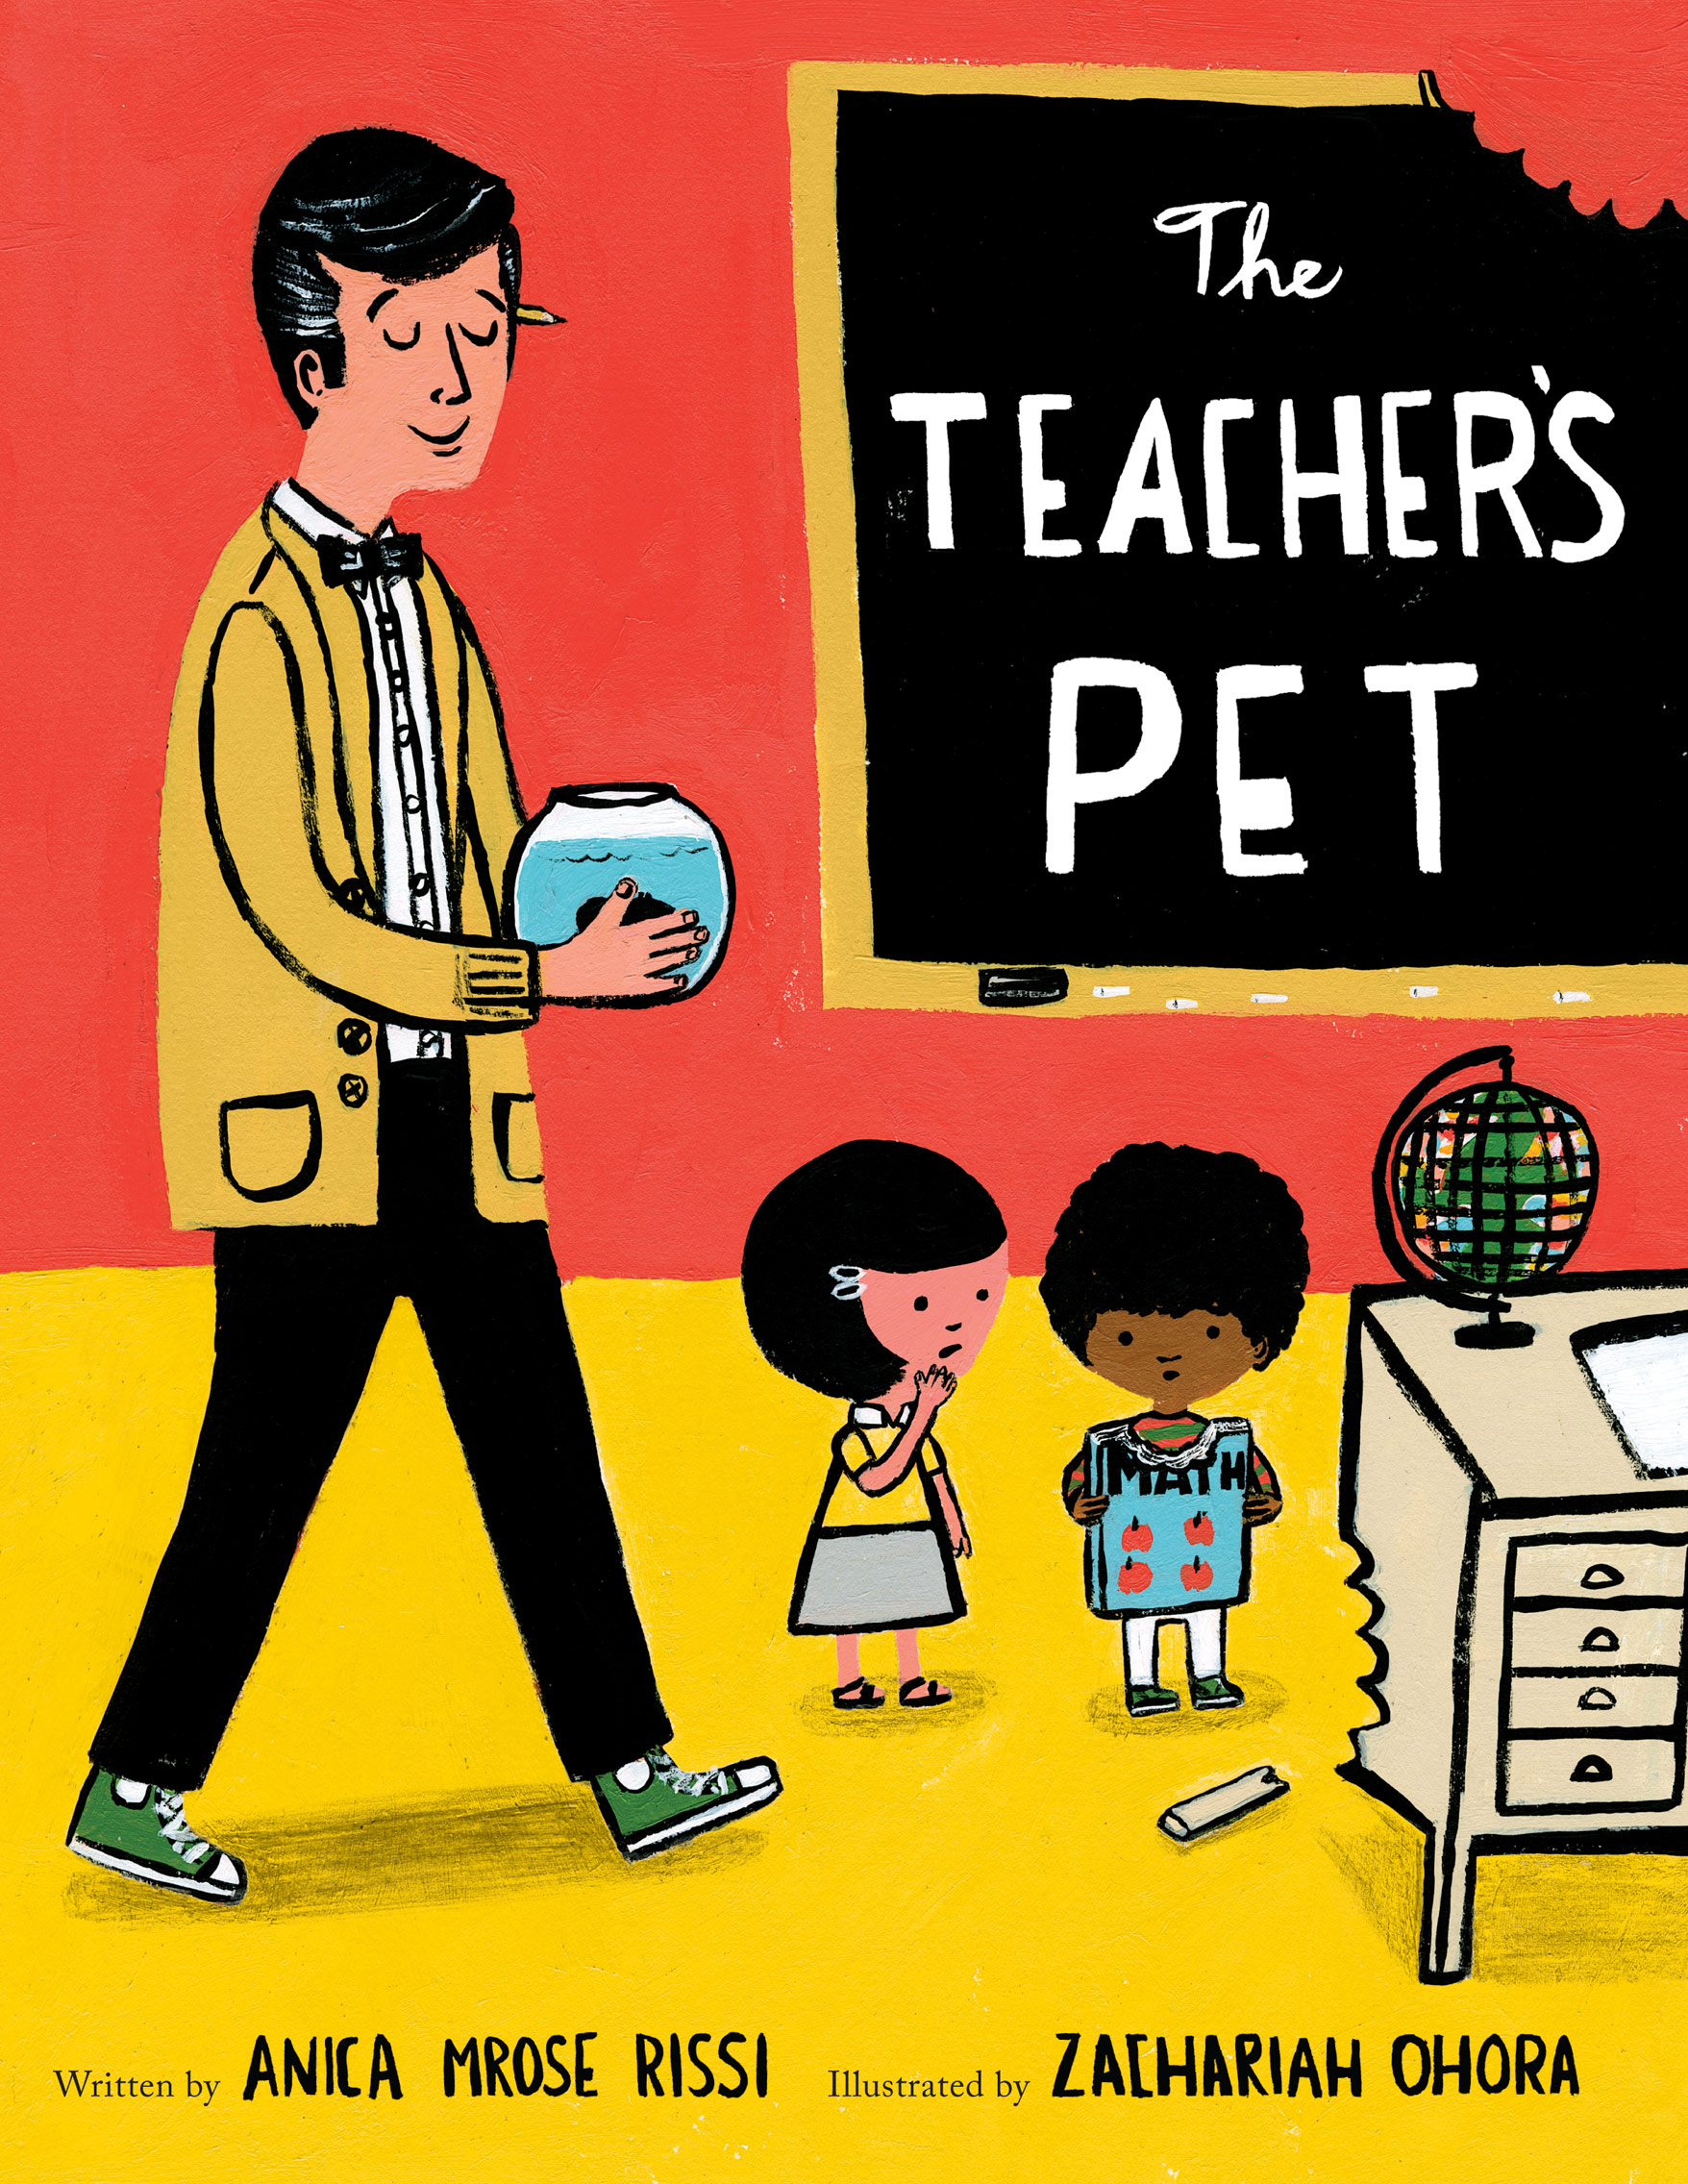 Teachers pet фф. Teacher's Pet. Тичер ПЭТ. Be the teacher's Pet. Питомец учителя the teachers Pet.